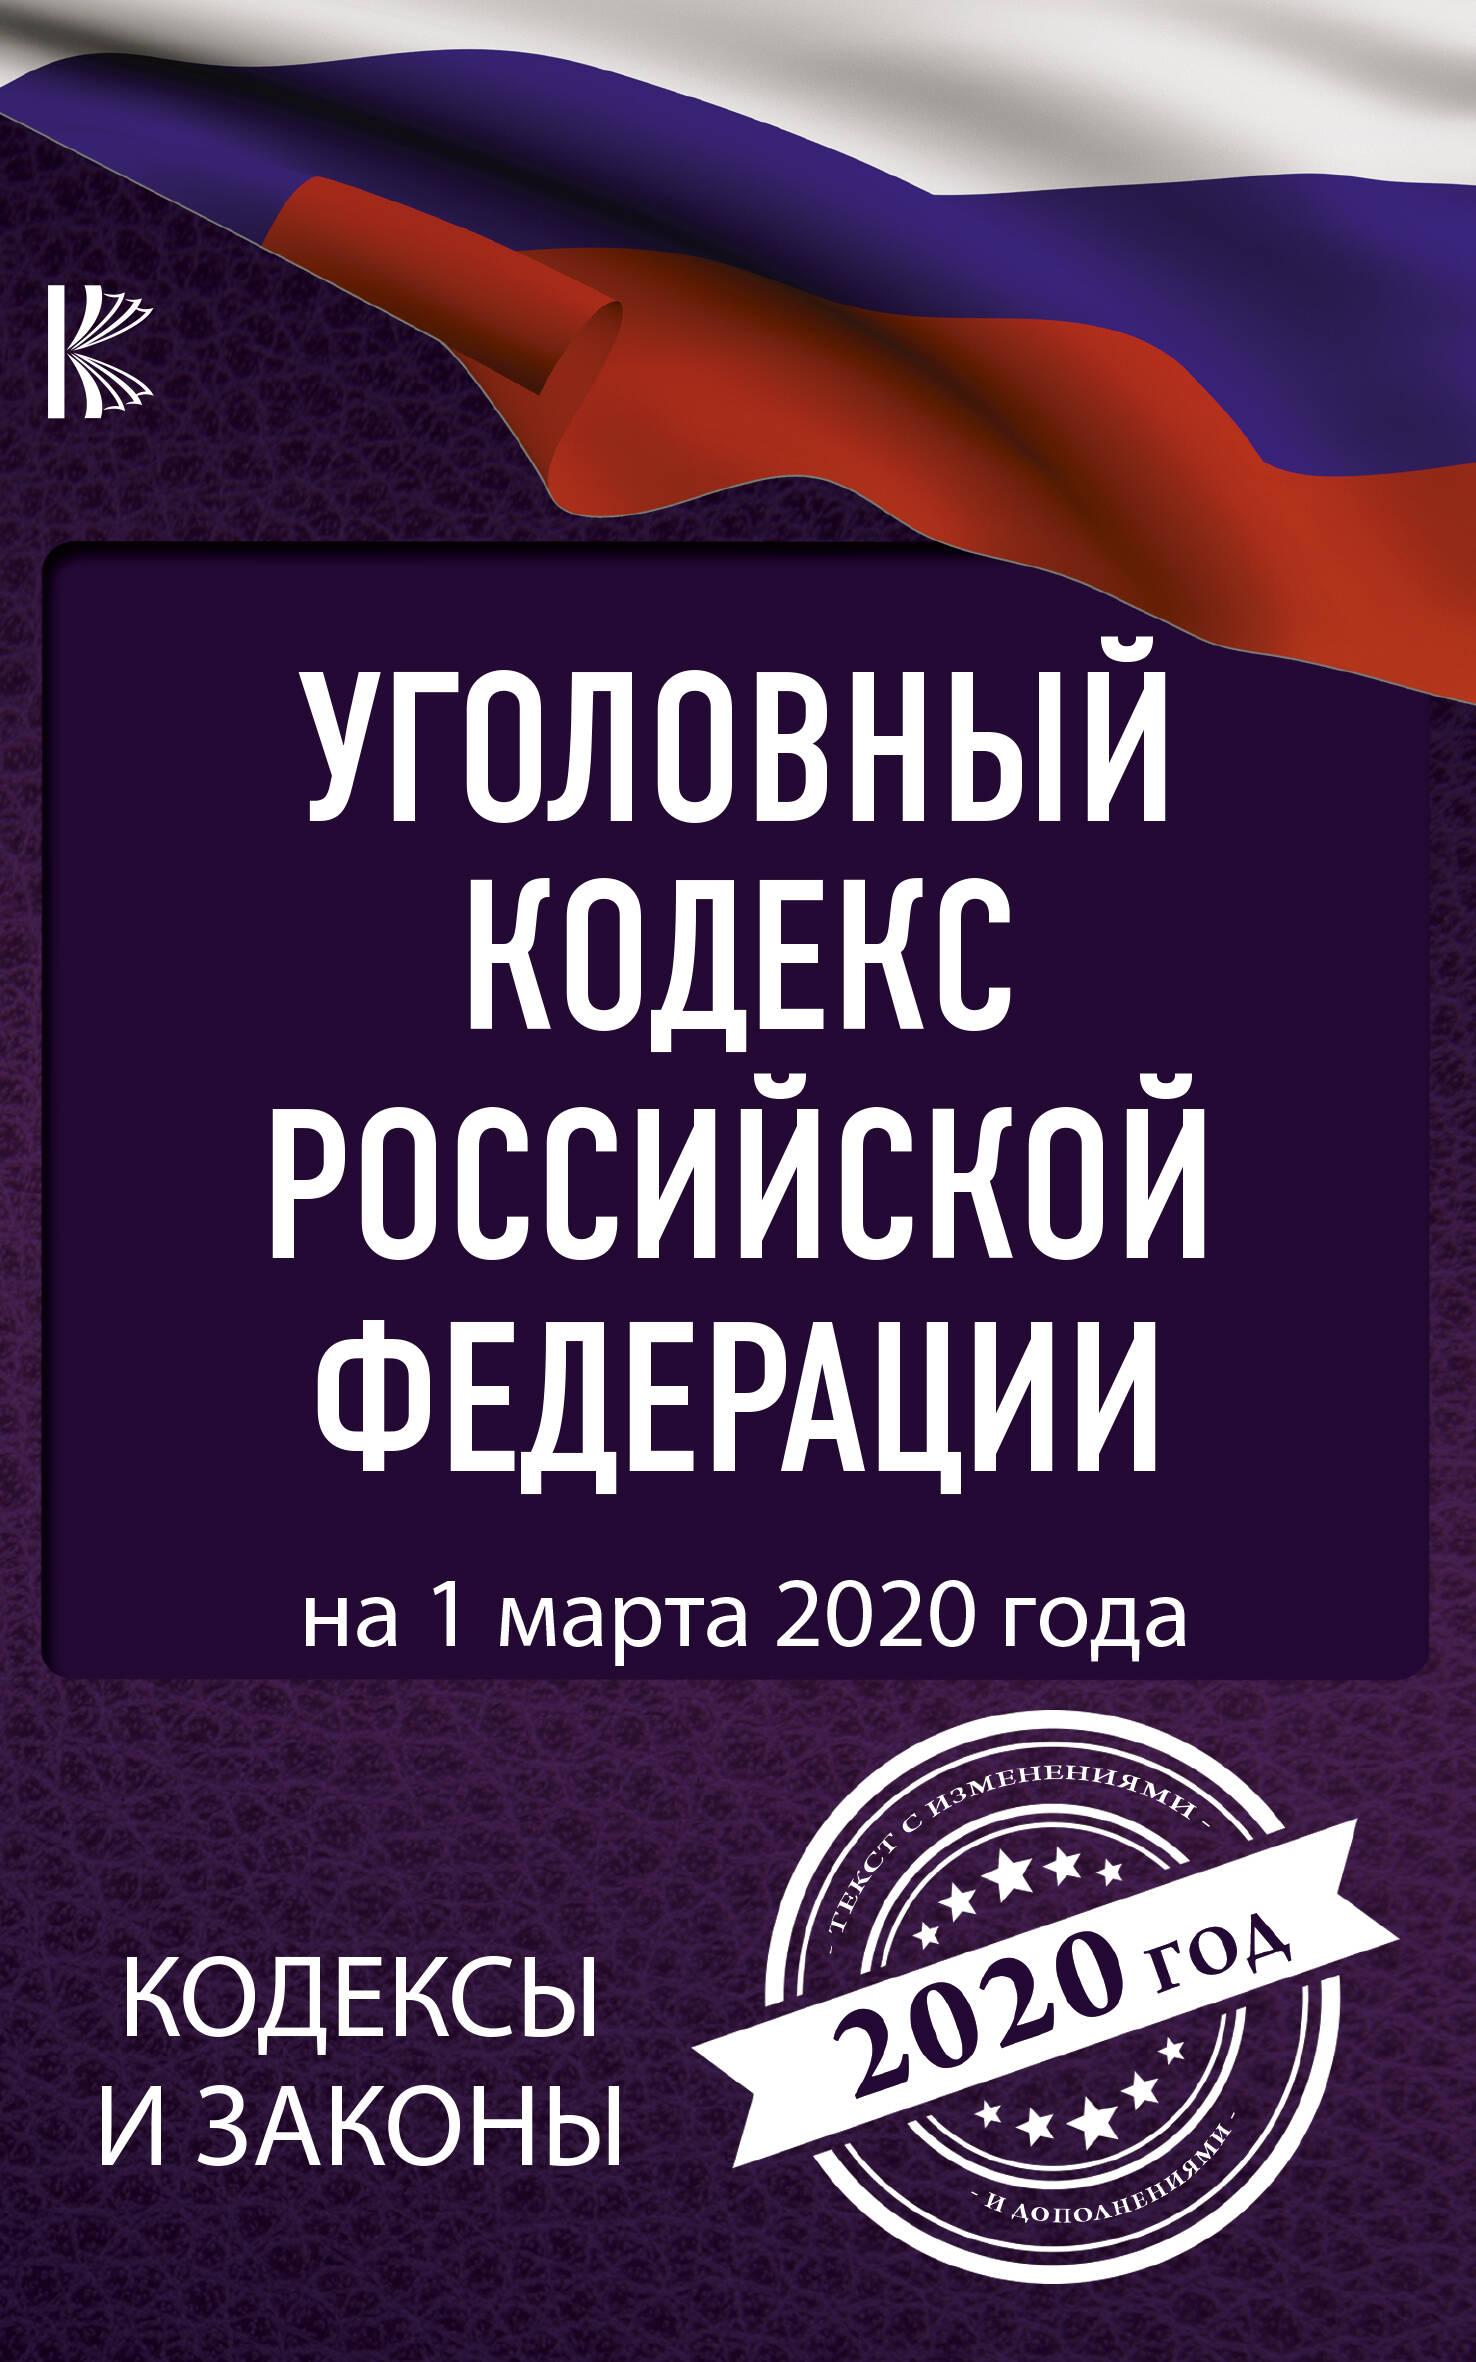  Уголовный Кодекс Российской Федерации на 1 марта 2020 года - страница 0